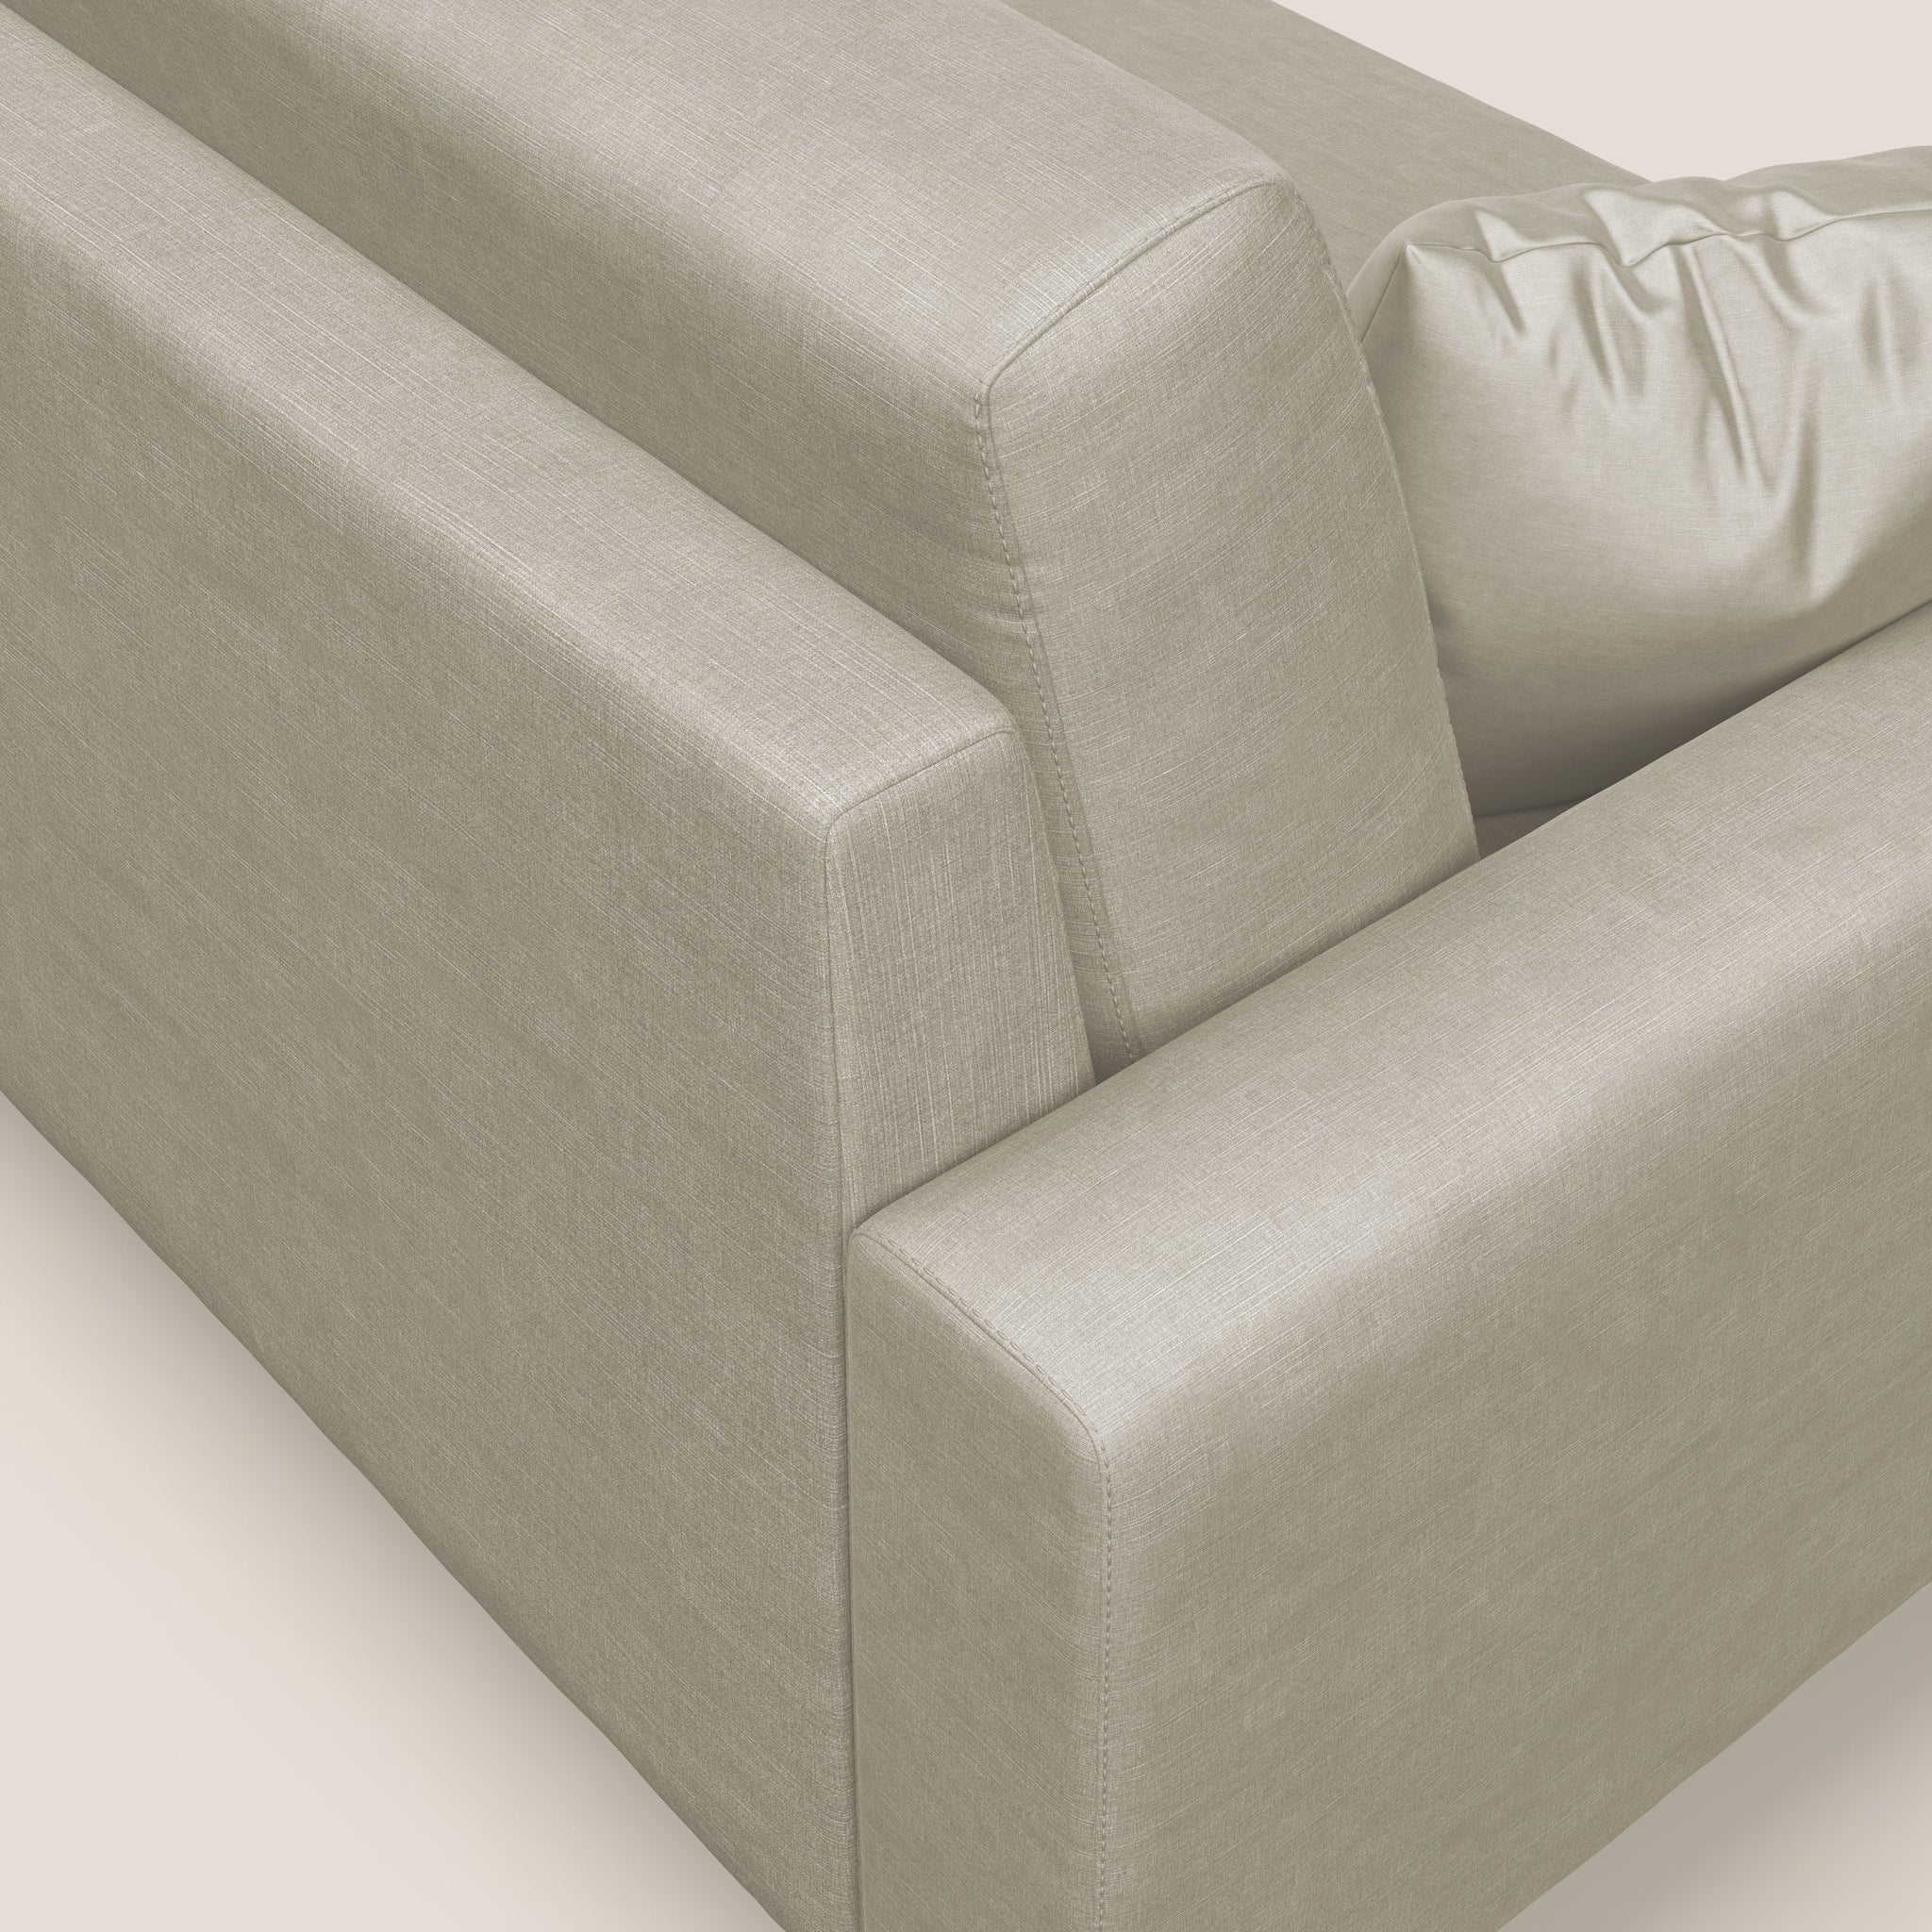 Arthur divano moderno angolare in velluto morbido impermeabile - divano fisso, divano lineare, via_enabled - Divani.Store